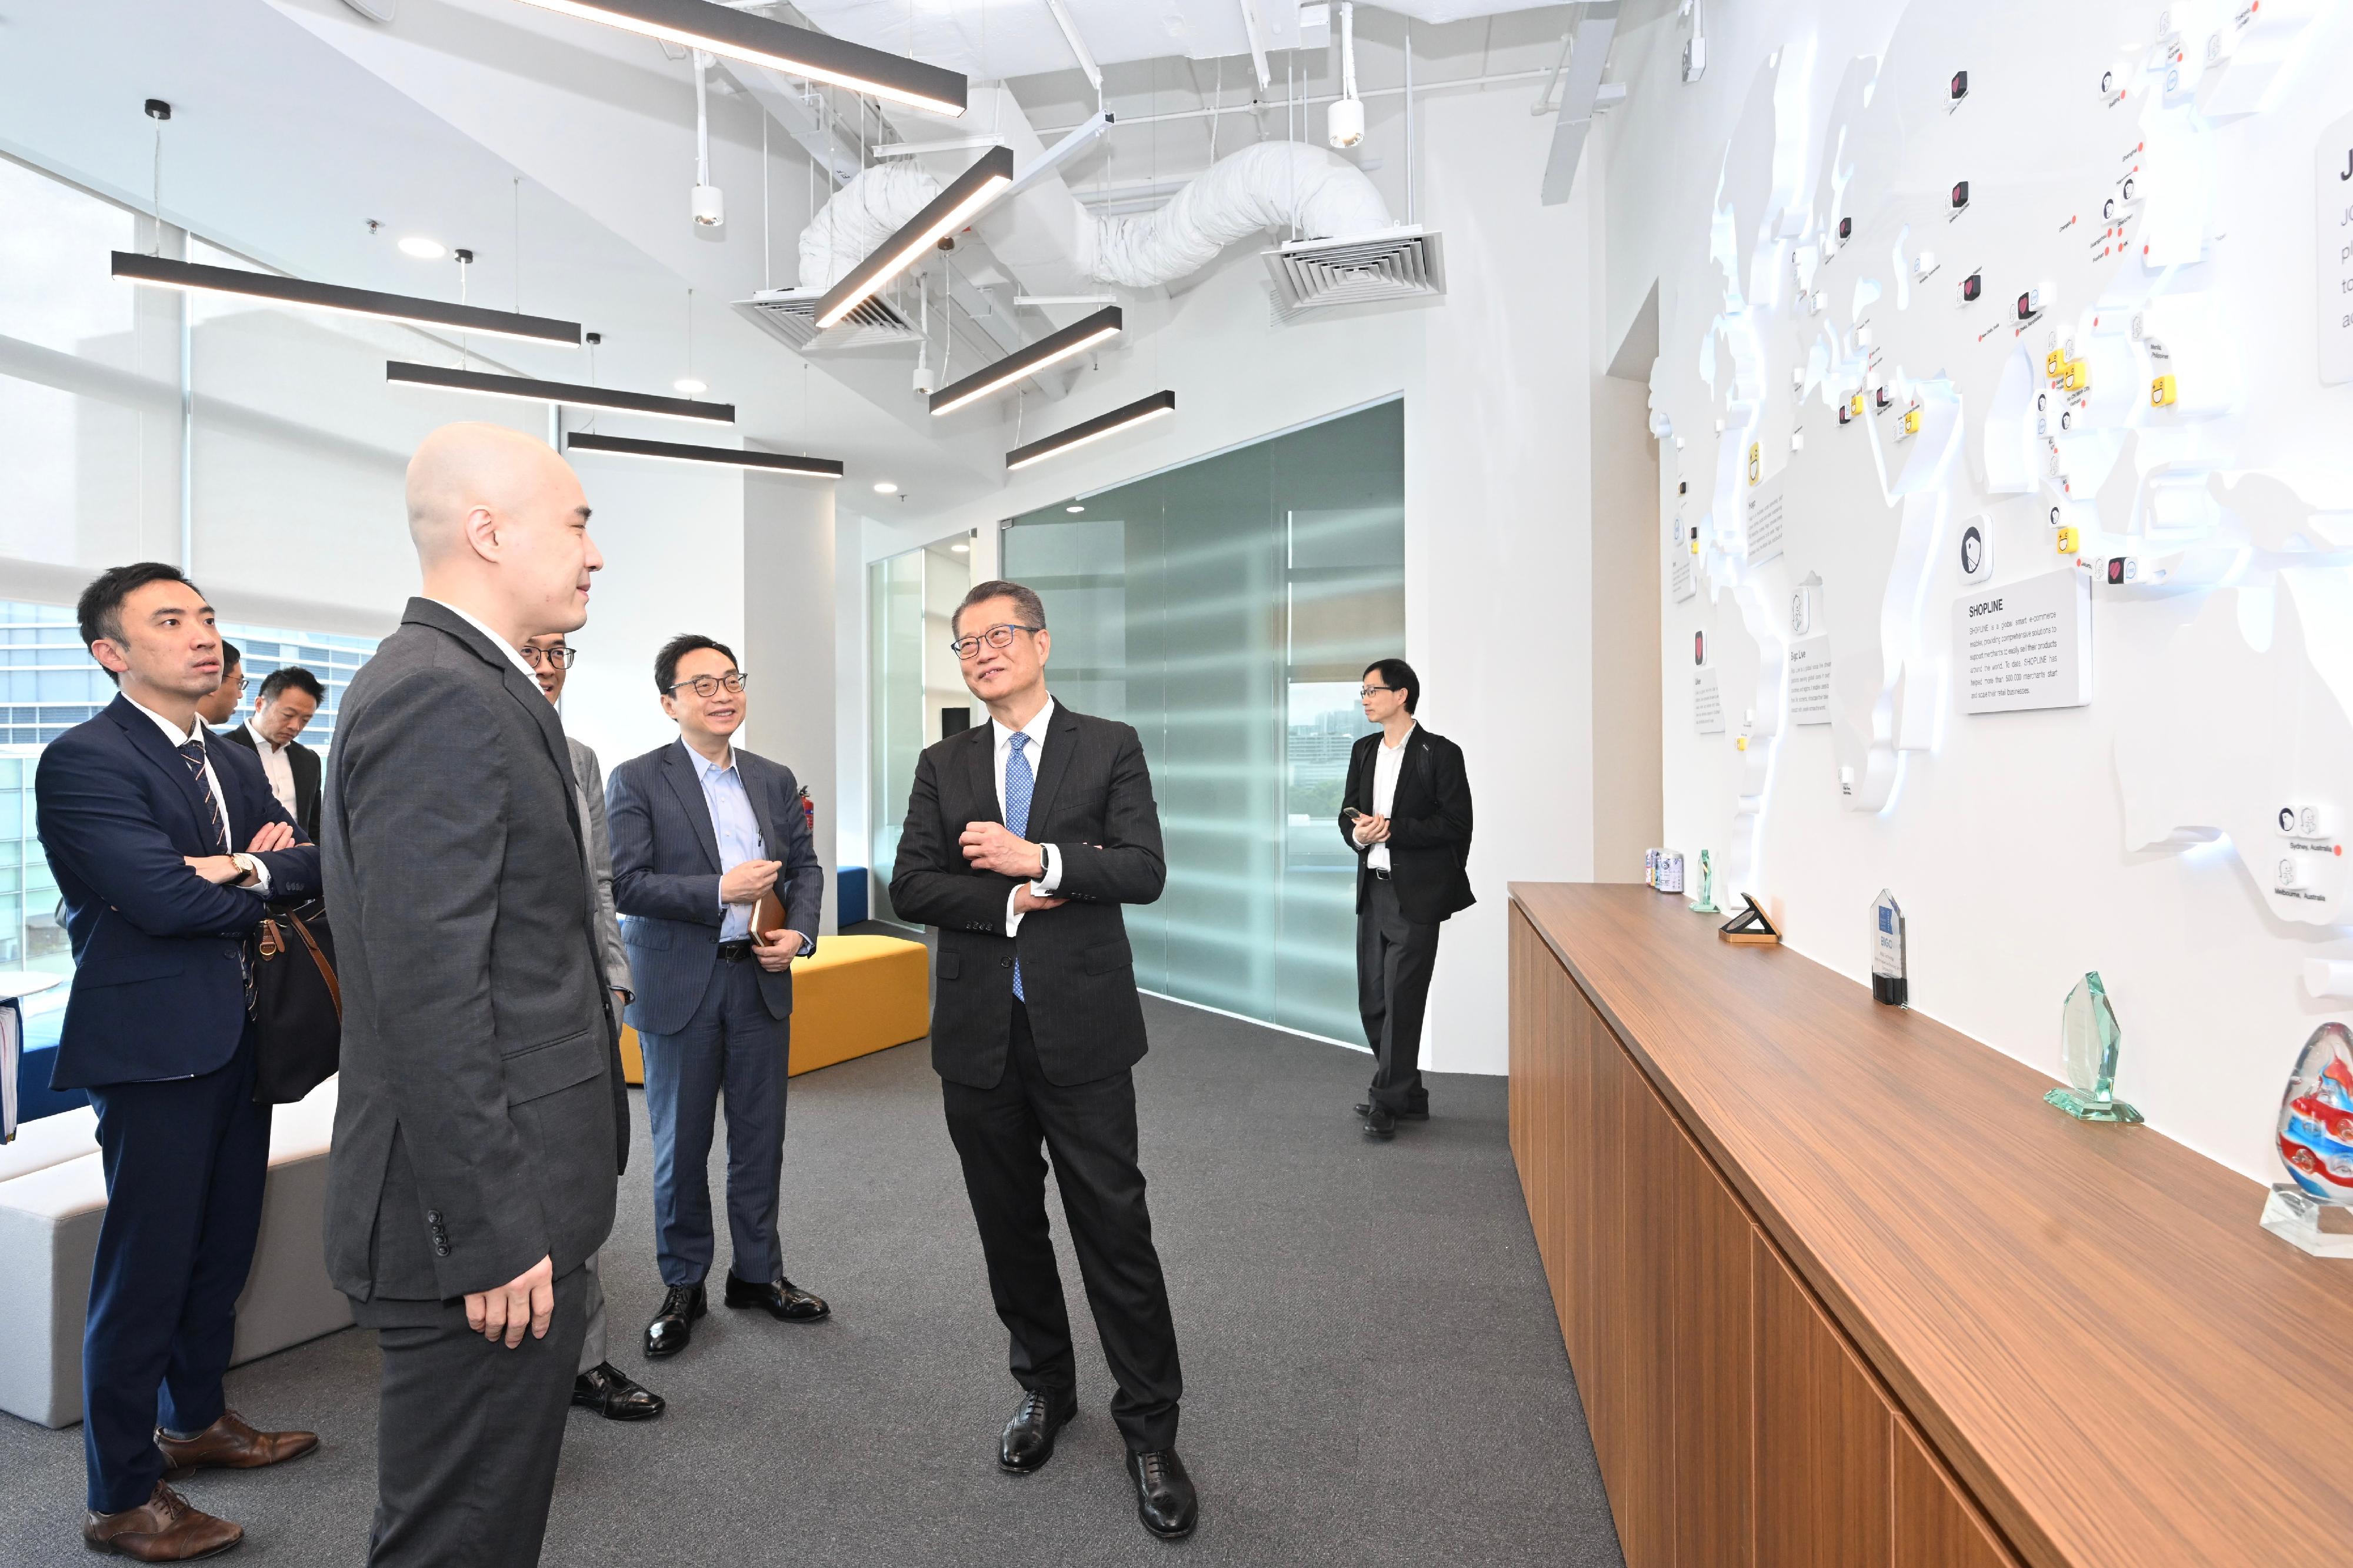 財政司司長陳茂波今日（三月三十日）在新加坡進行最後一日訪問行程。圖示陳茂波（右二）與互聯網科技公司的負責人會面，了解他們的業務和科技應用，並鼓勵他們到香港發展業務。